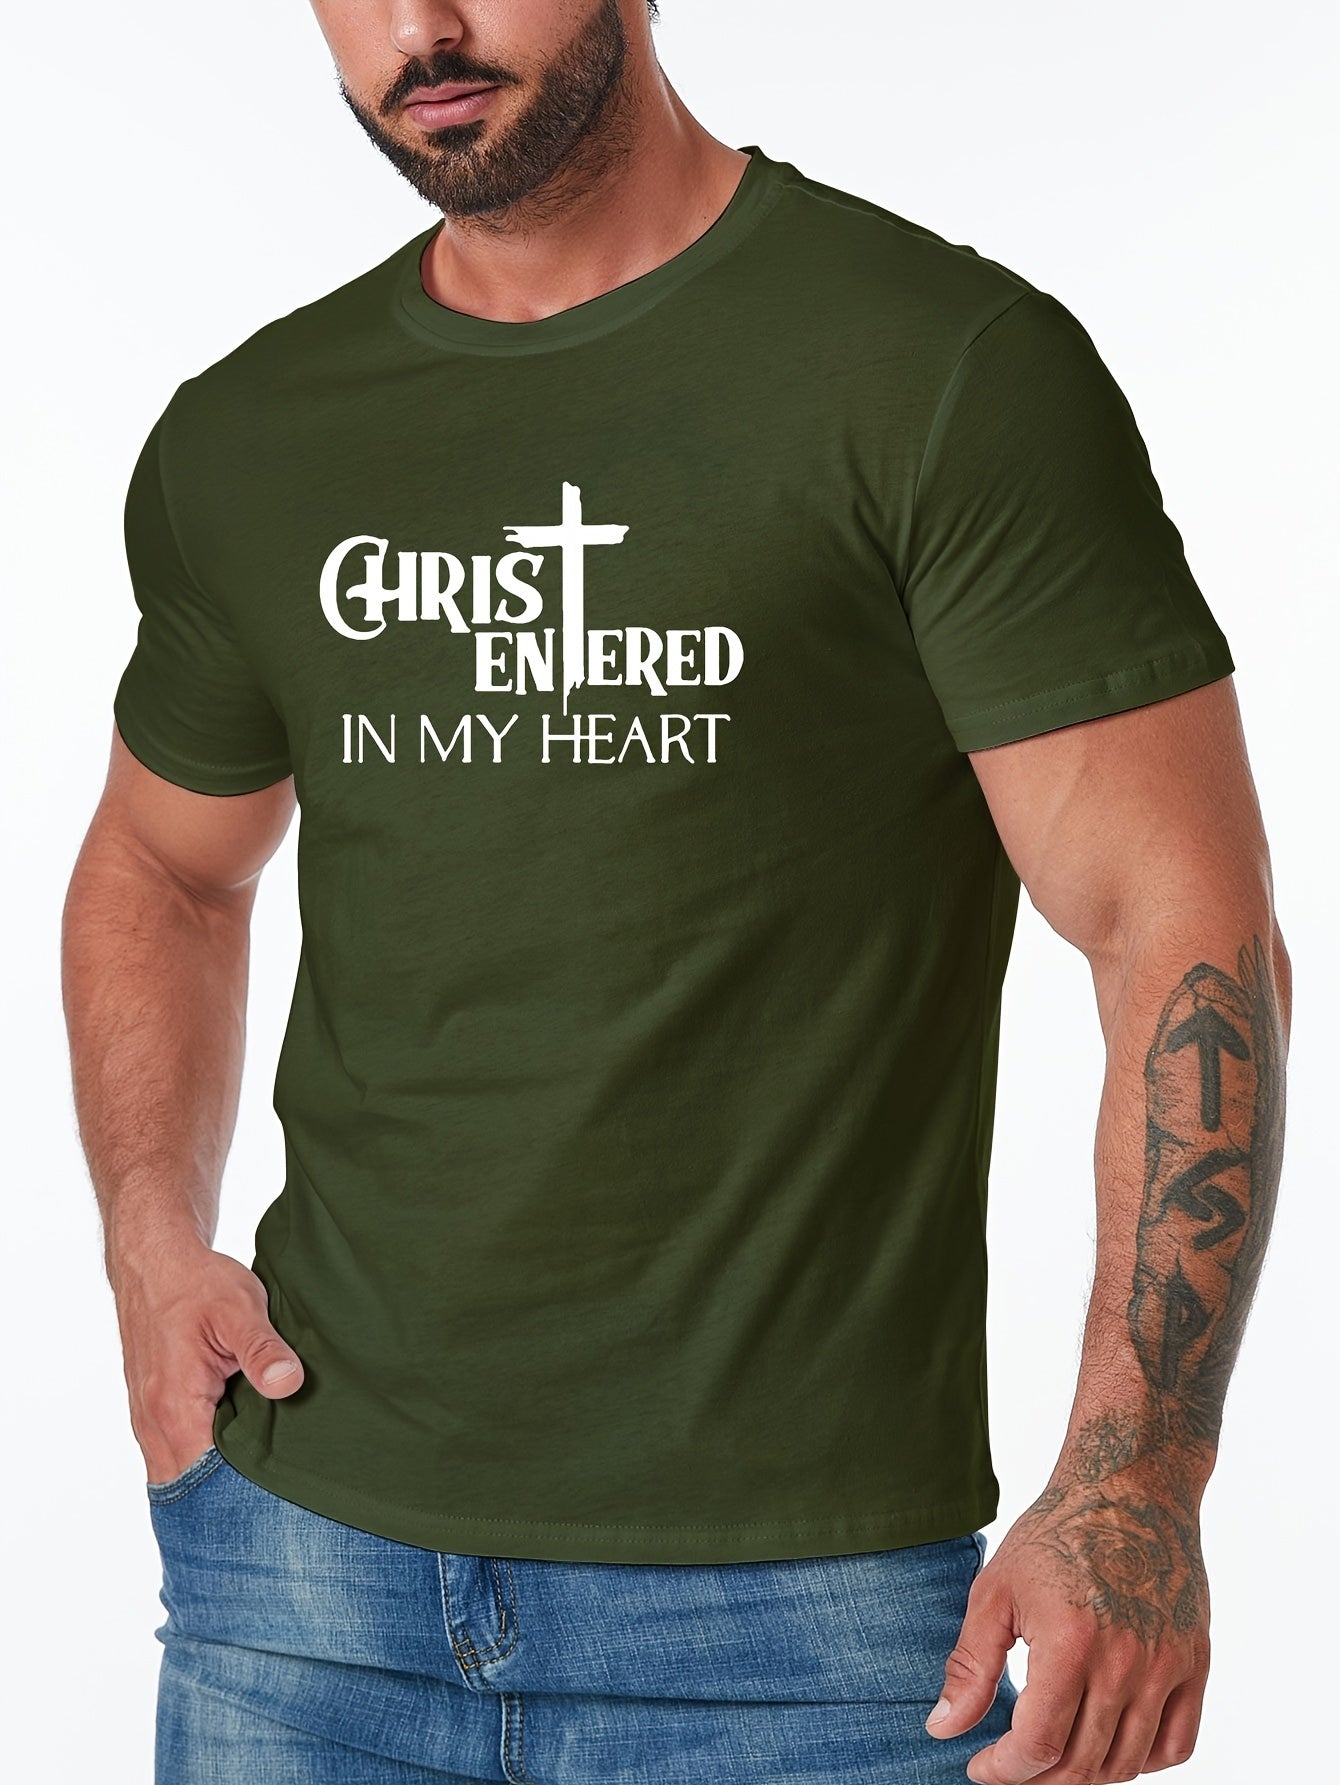 Christ Entered In My Heart Men's Christian T-shirt claimedbygoddesigns